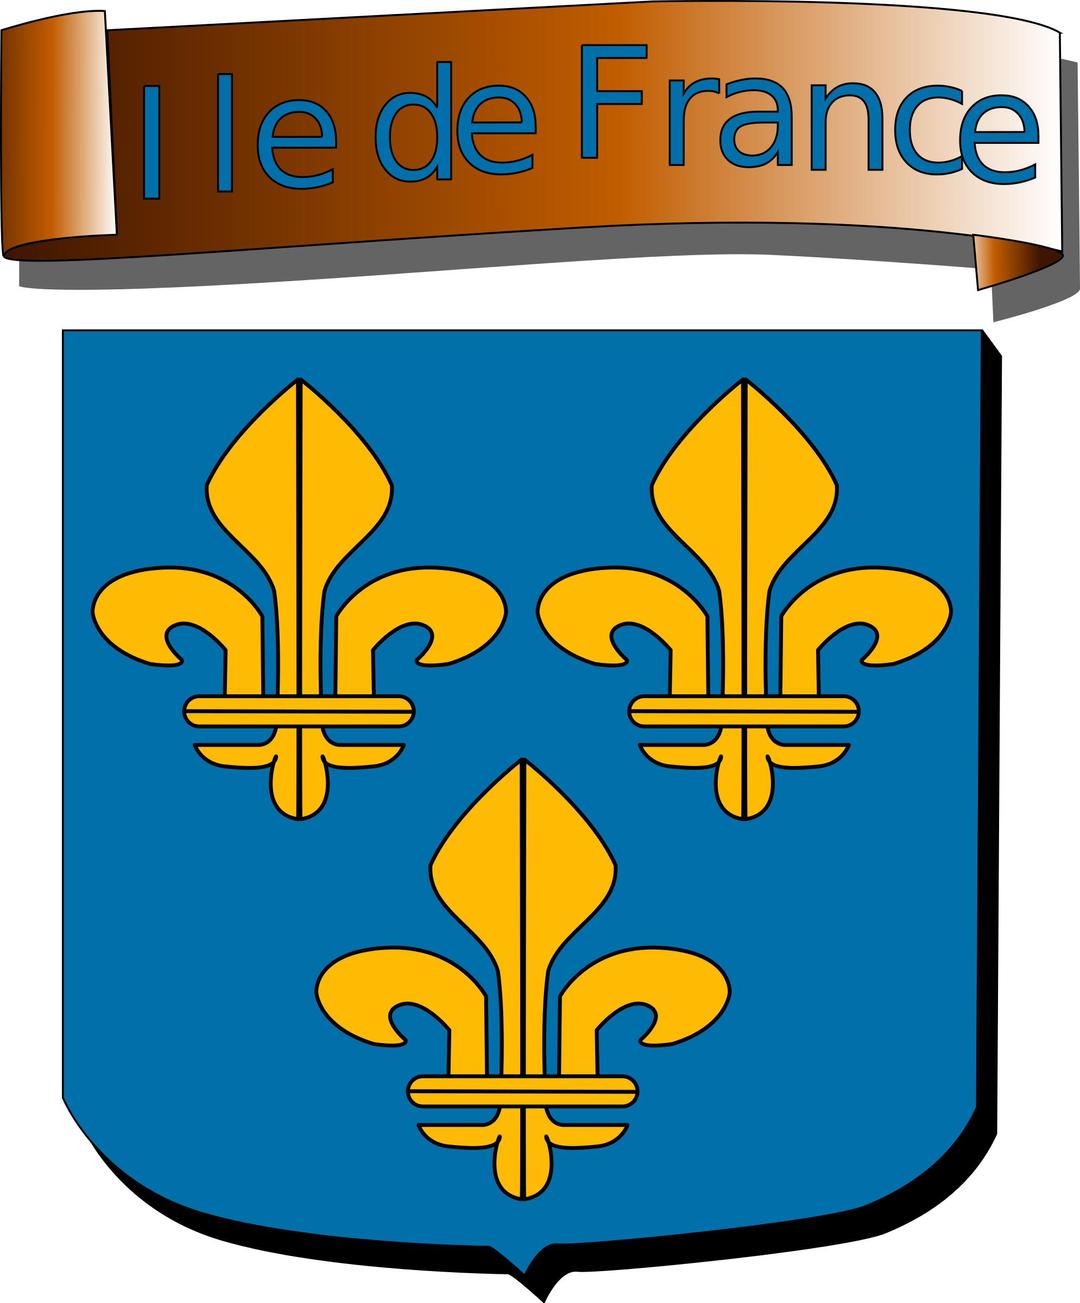 Ile de France - coat of arms png transparent